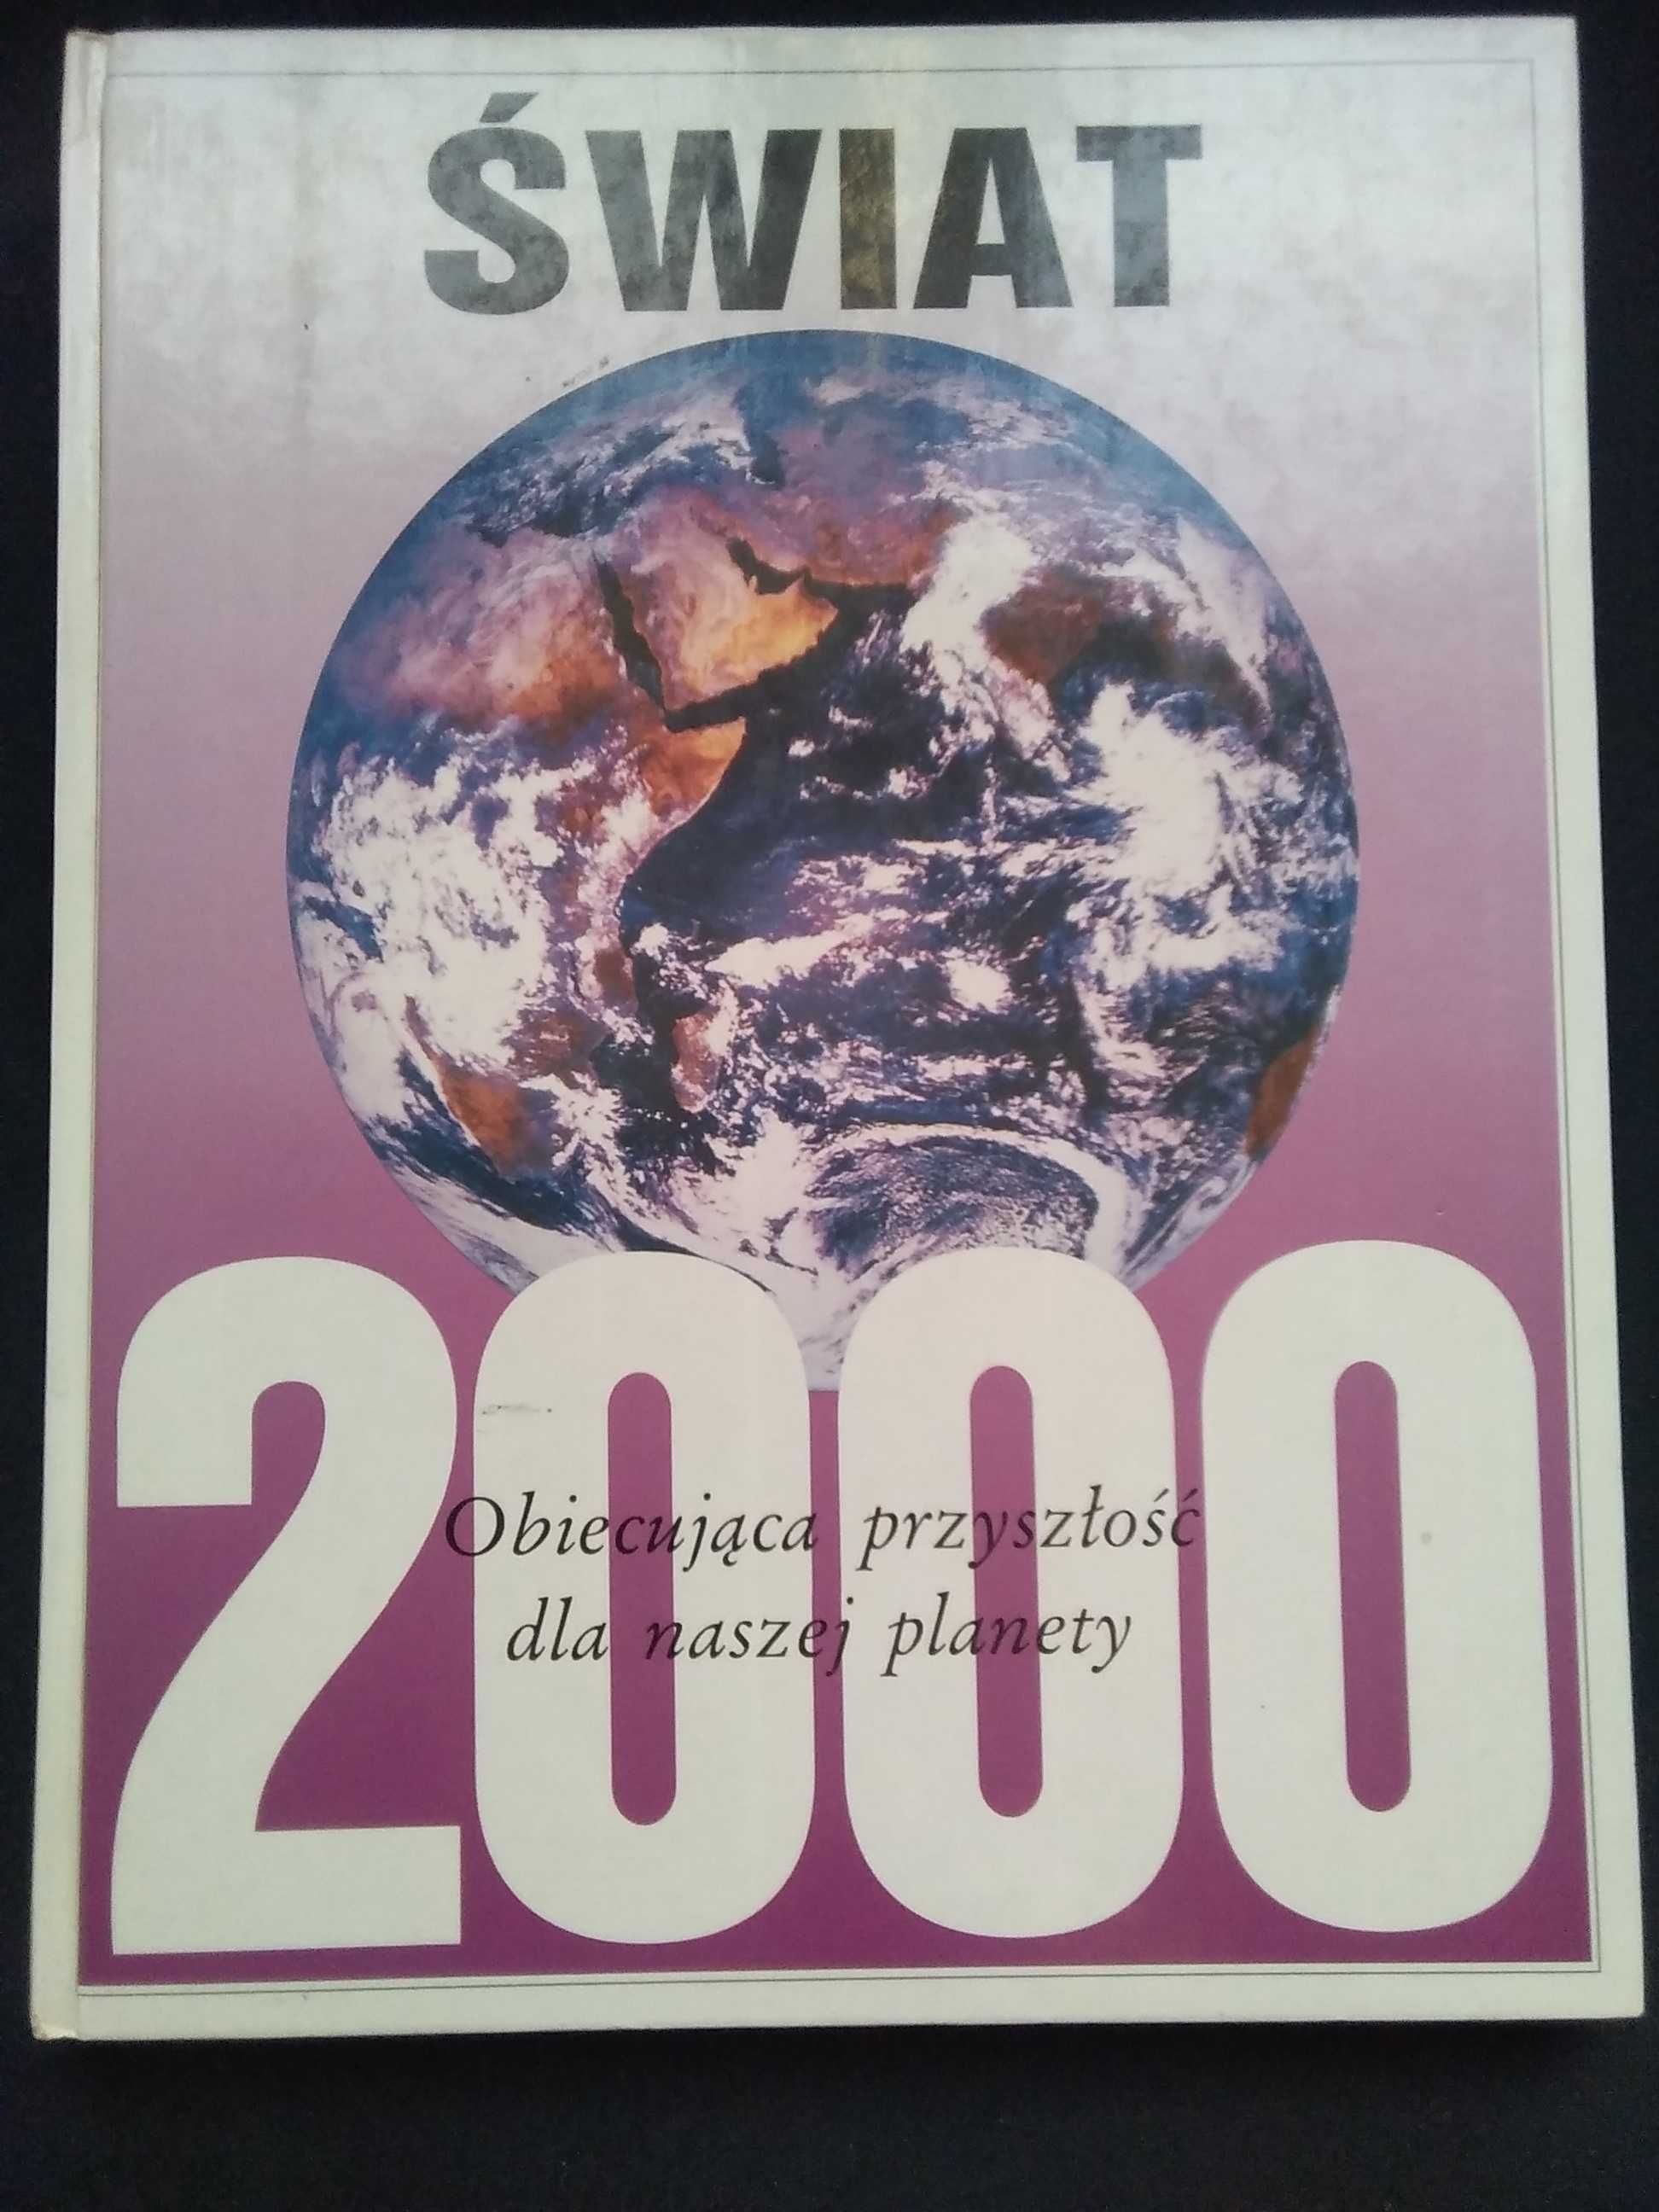 Świat 2000 Album